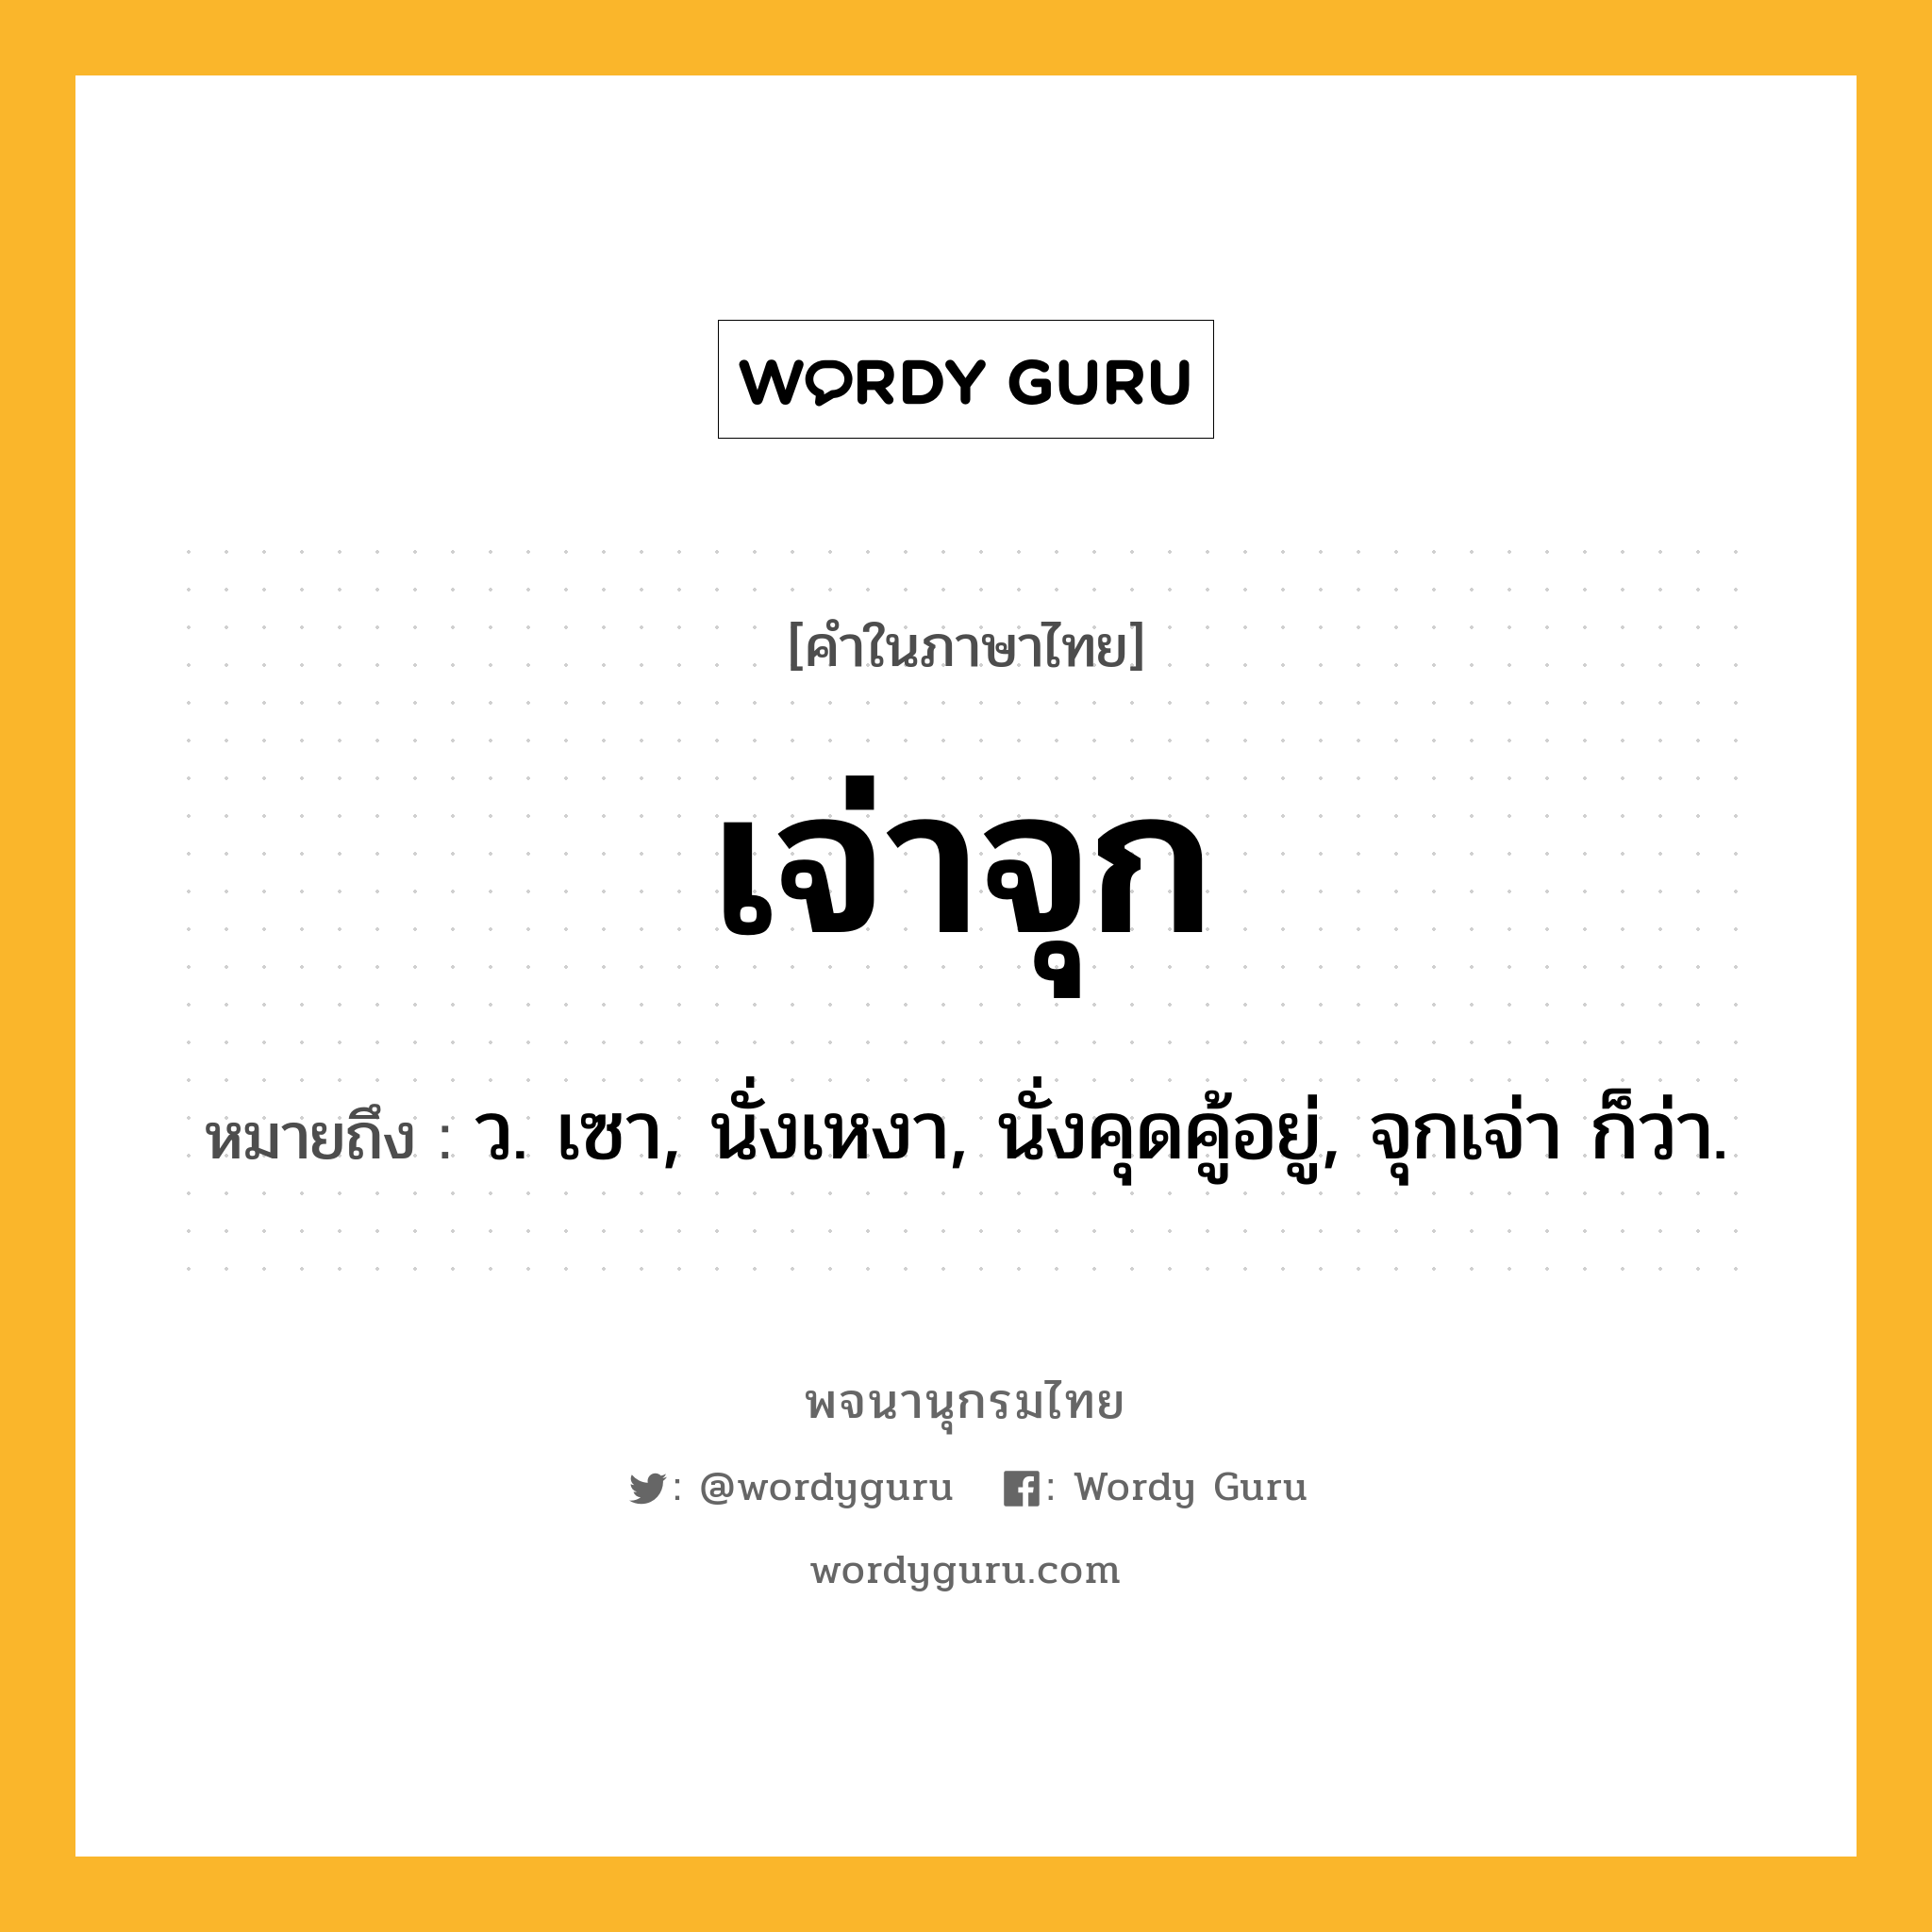 เจ่าจุก หมายถึงอะไร?, คำในภาษาไทย เจ่าจุก หมายถึง ว. เซา, นั่งเหงา, นั่งคุดคู้อยู่, จุกเจ่า ก็ว่า.